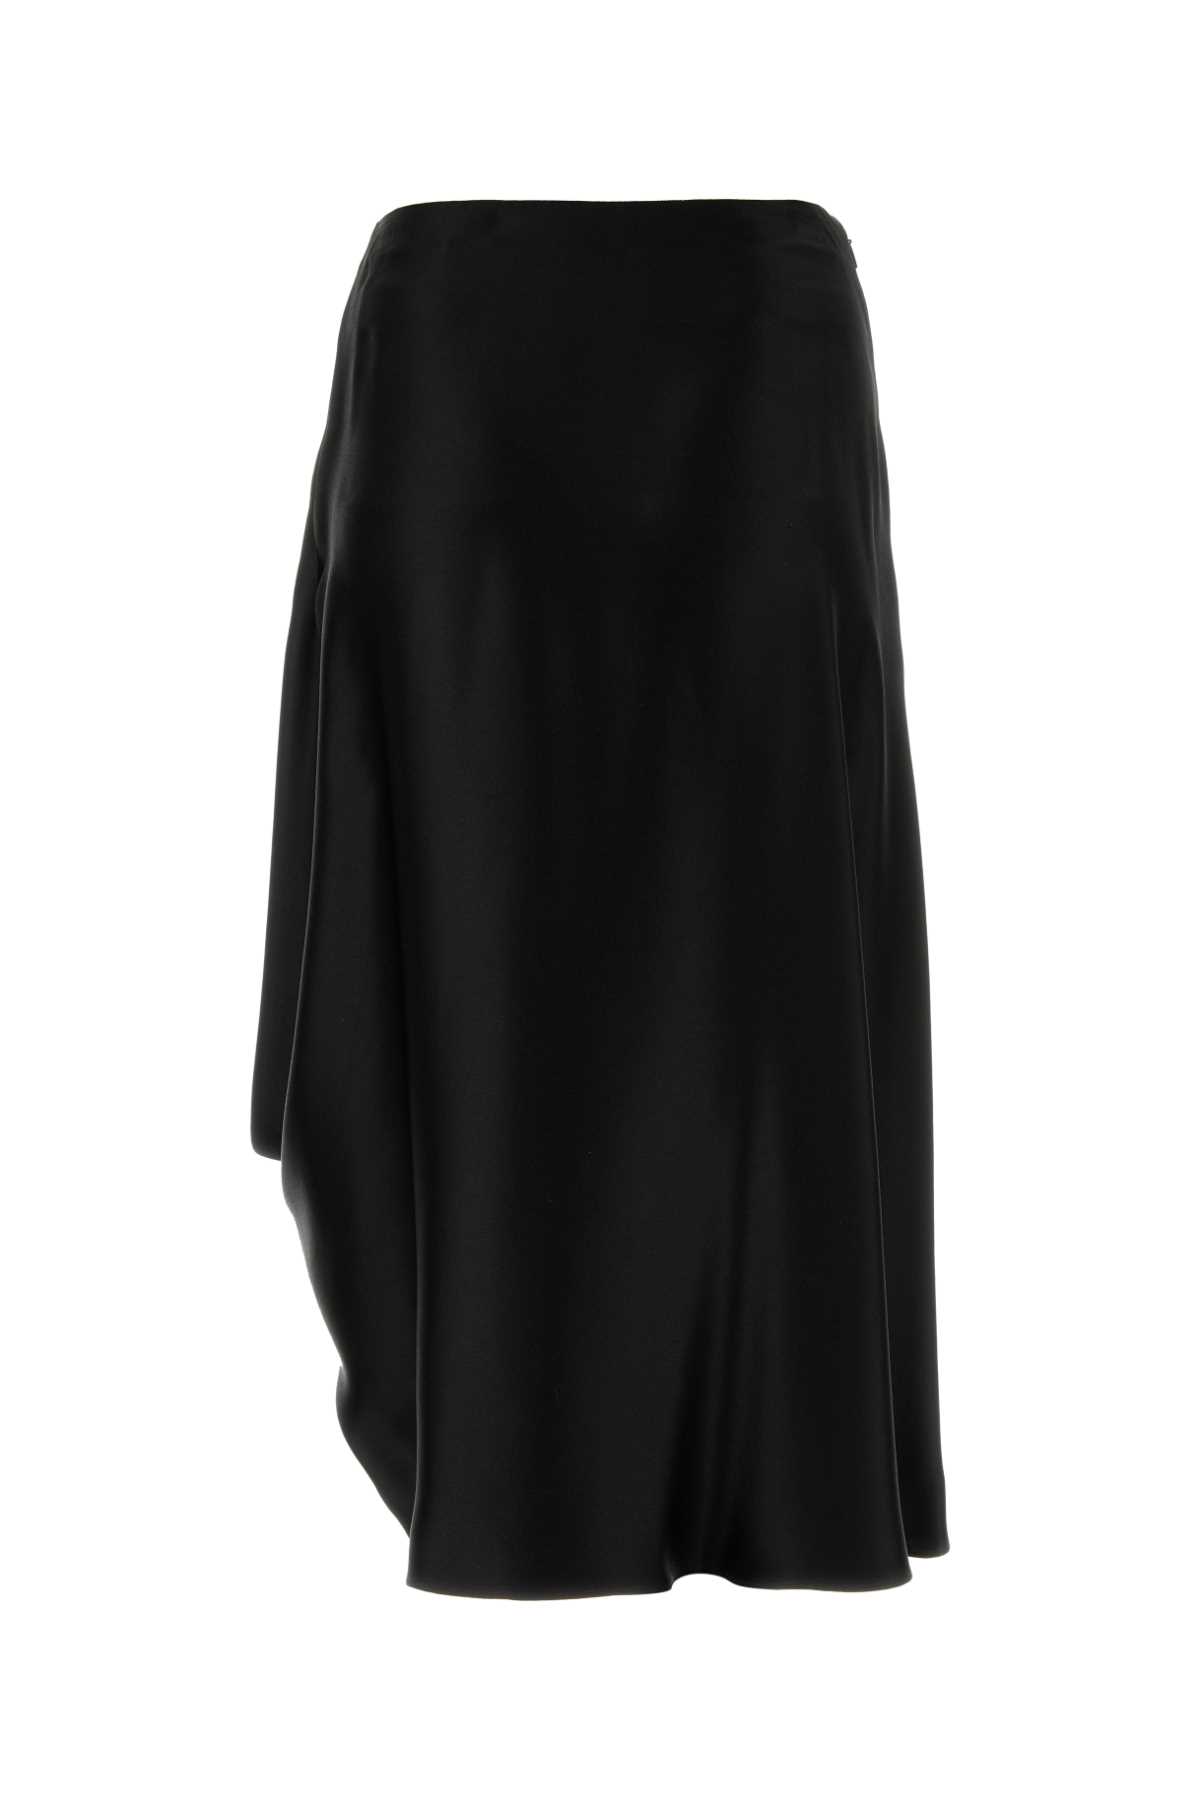 Loewe Black Silk Skirt